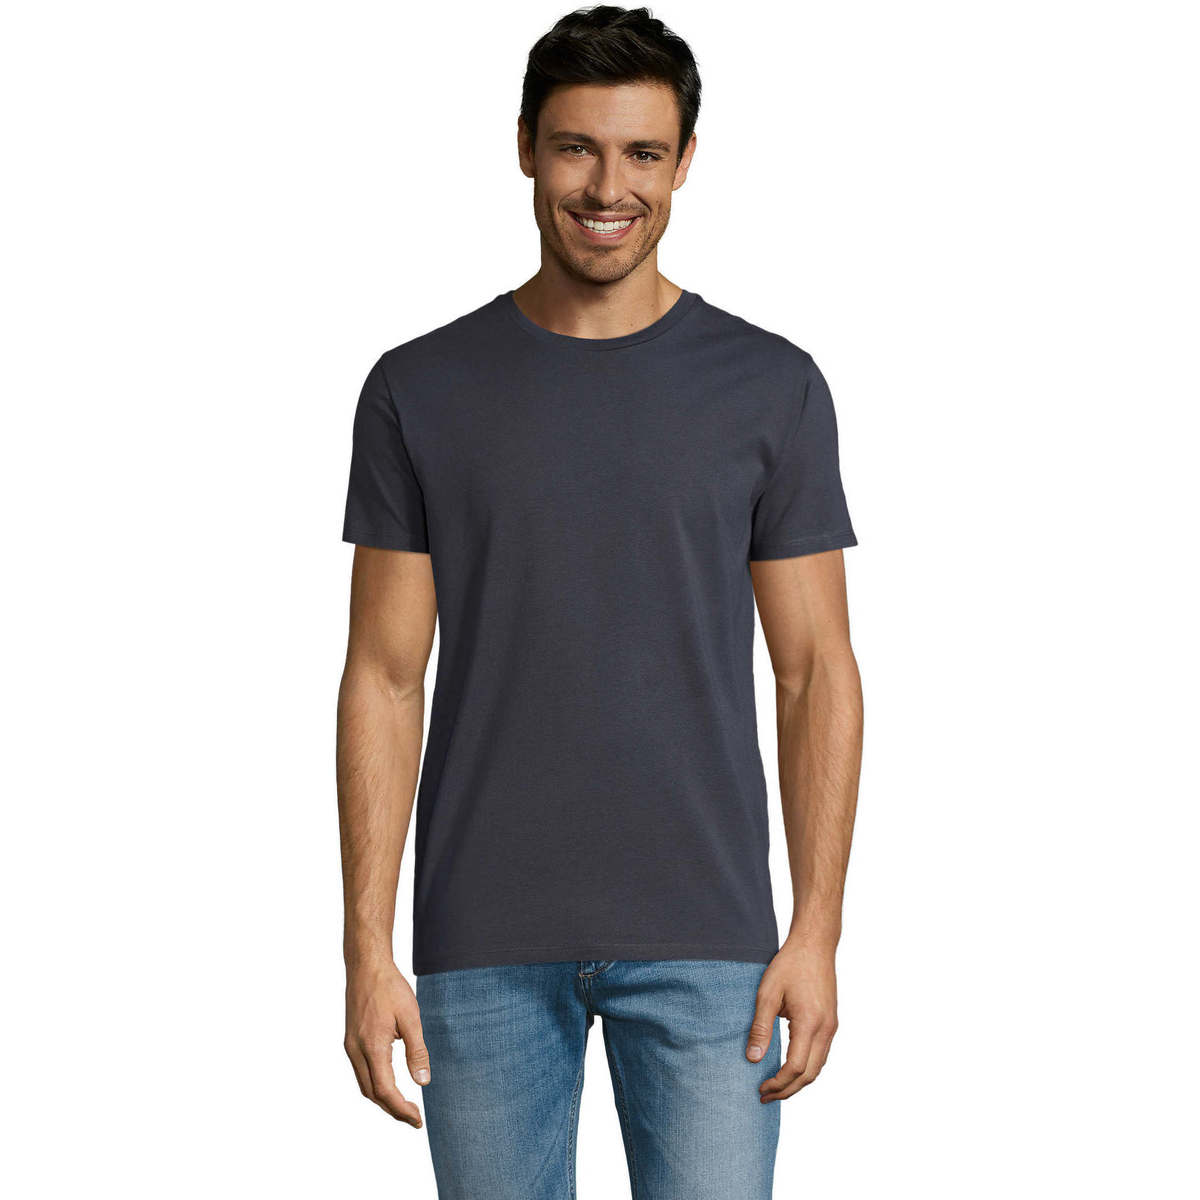 Textil Homem T-Shirt mangas curtas Sols Martin camiseta de hombre Cinza